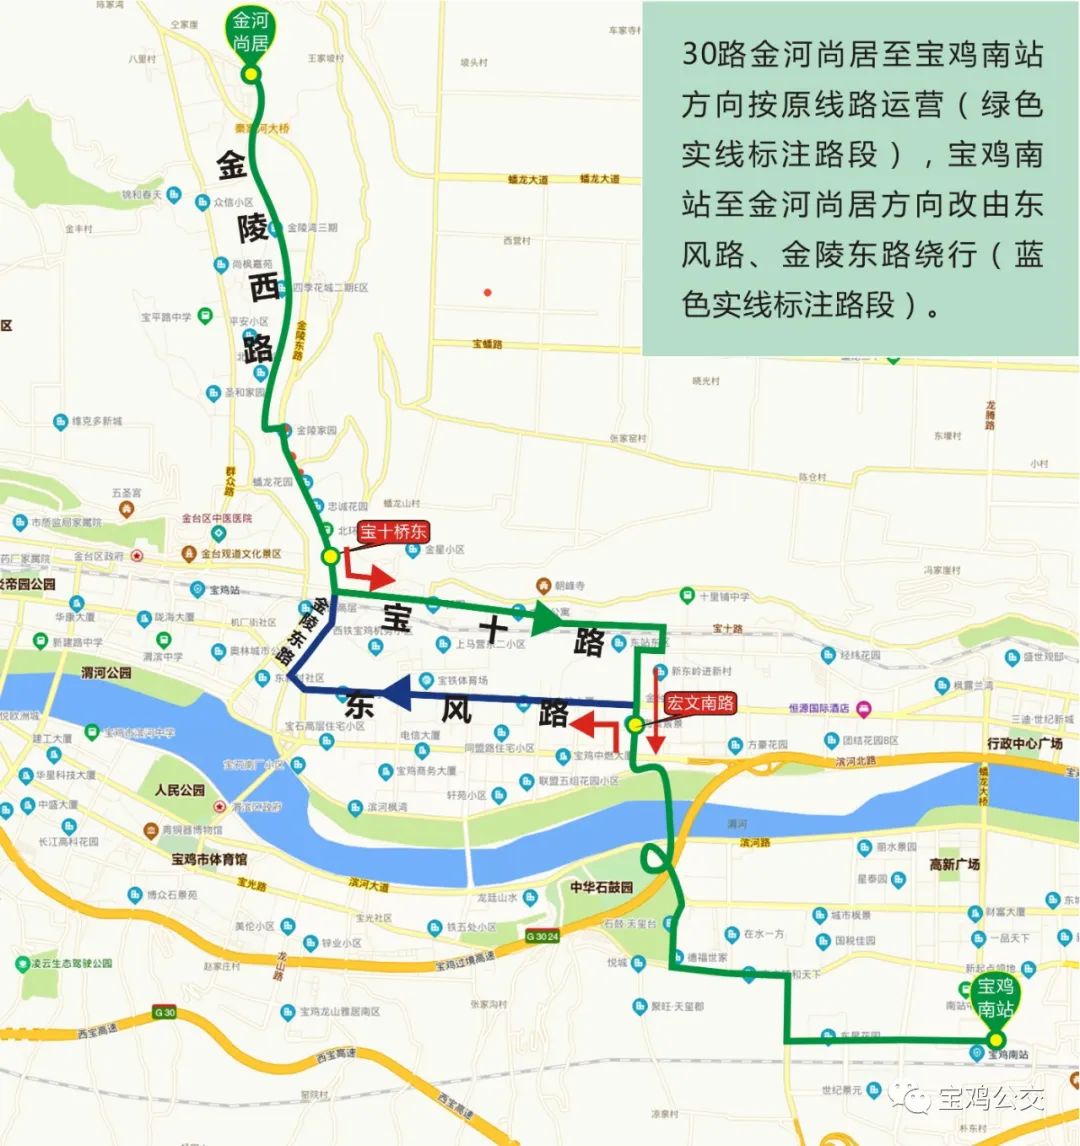 【广播宝鸡·快讯】公交调整线路图